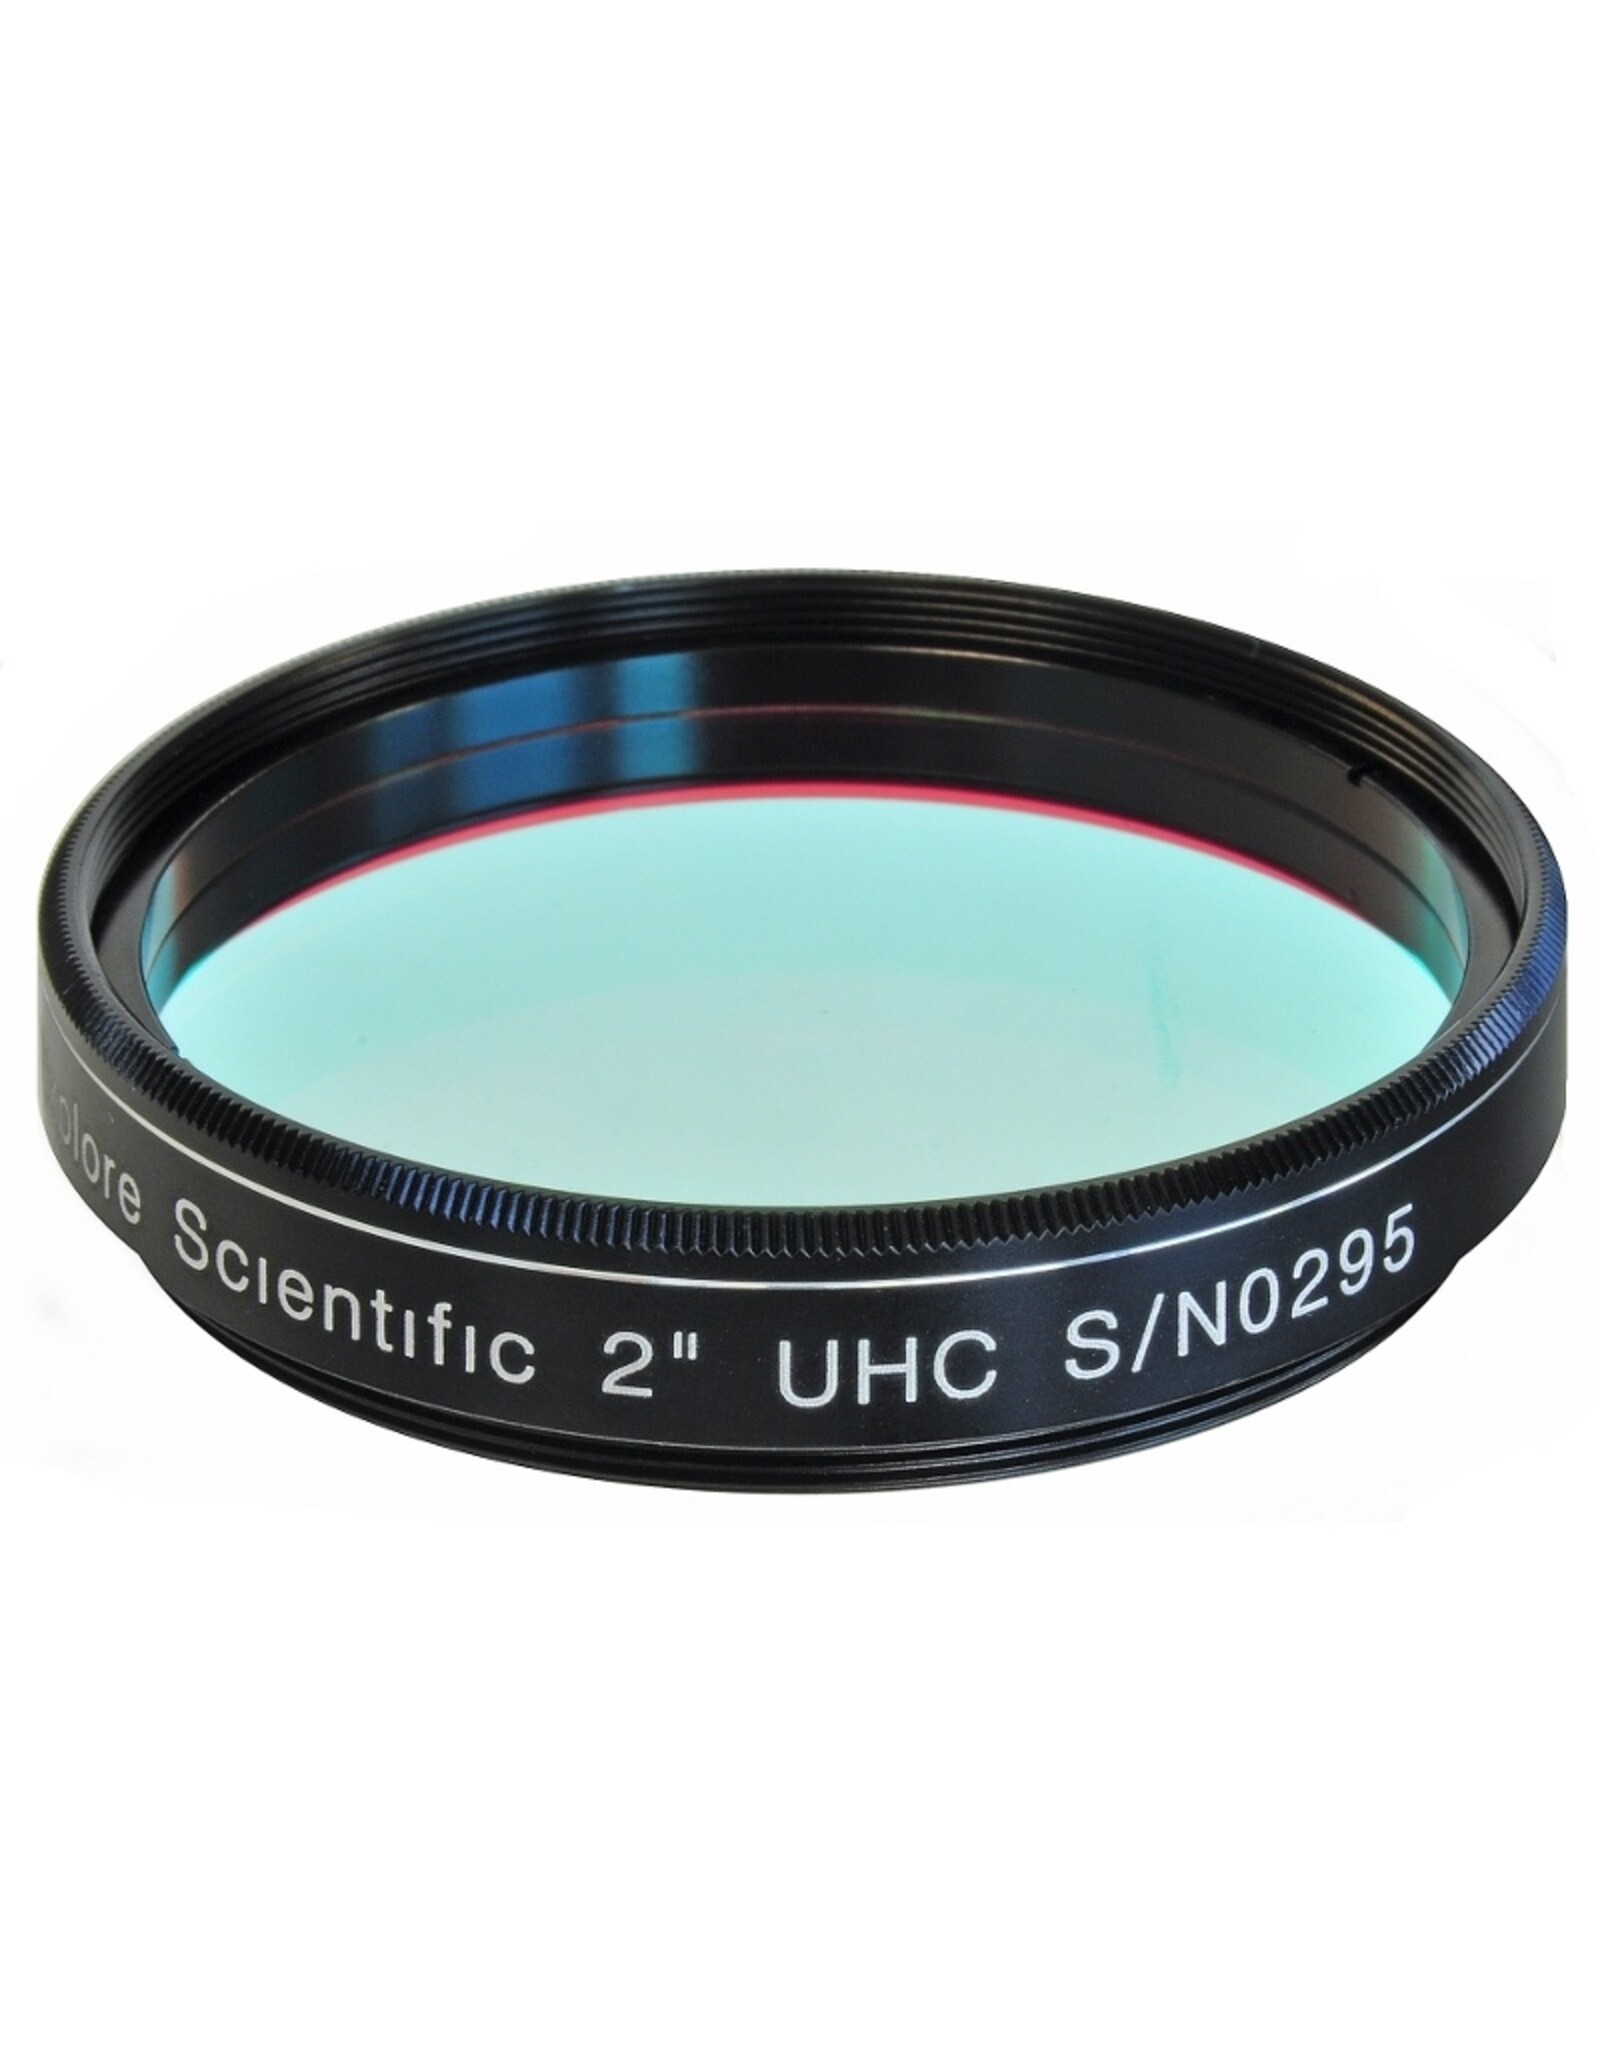 Explore Scientific 2" UHC Filter